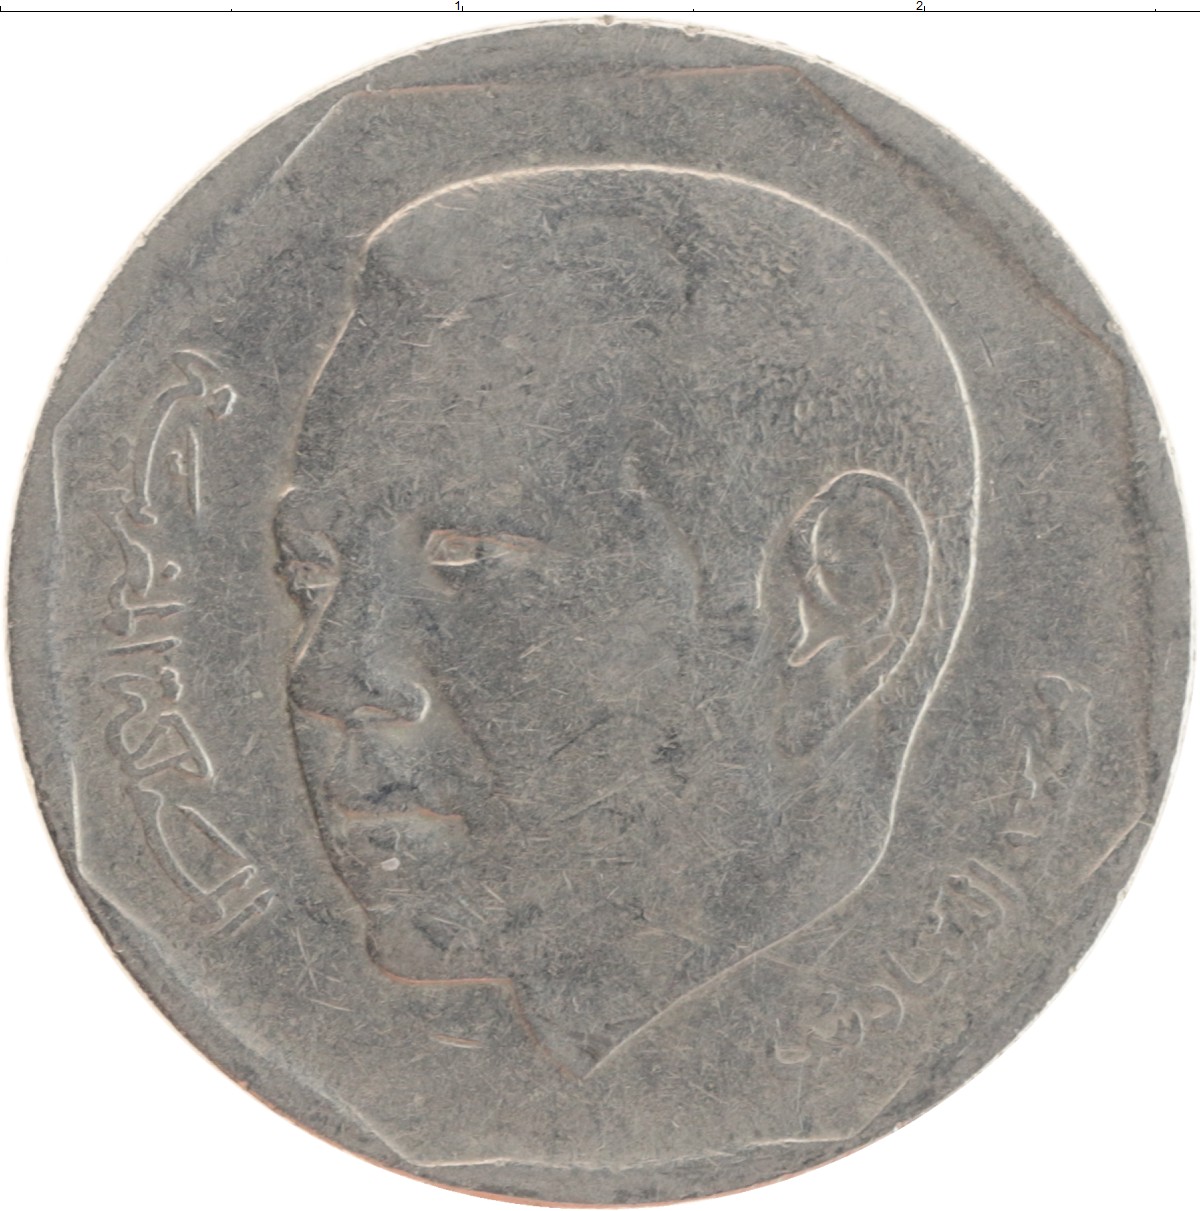 2 дирхама. Монеты дирхама. Монета Марокко 2002. Два дирхама монета. Монета 2 дирхама Египет.